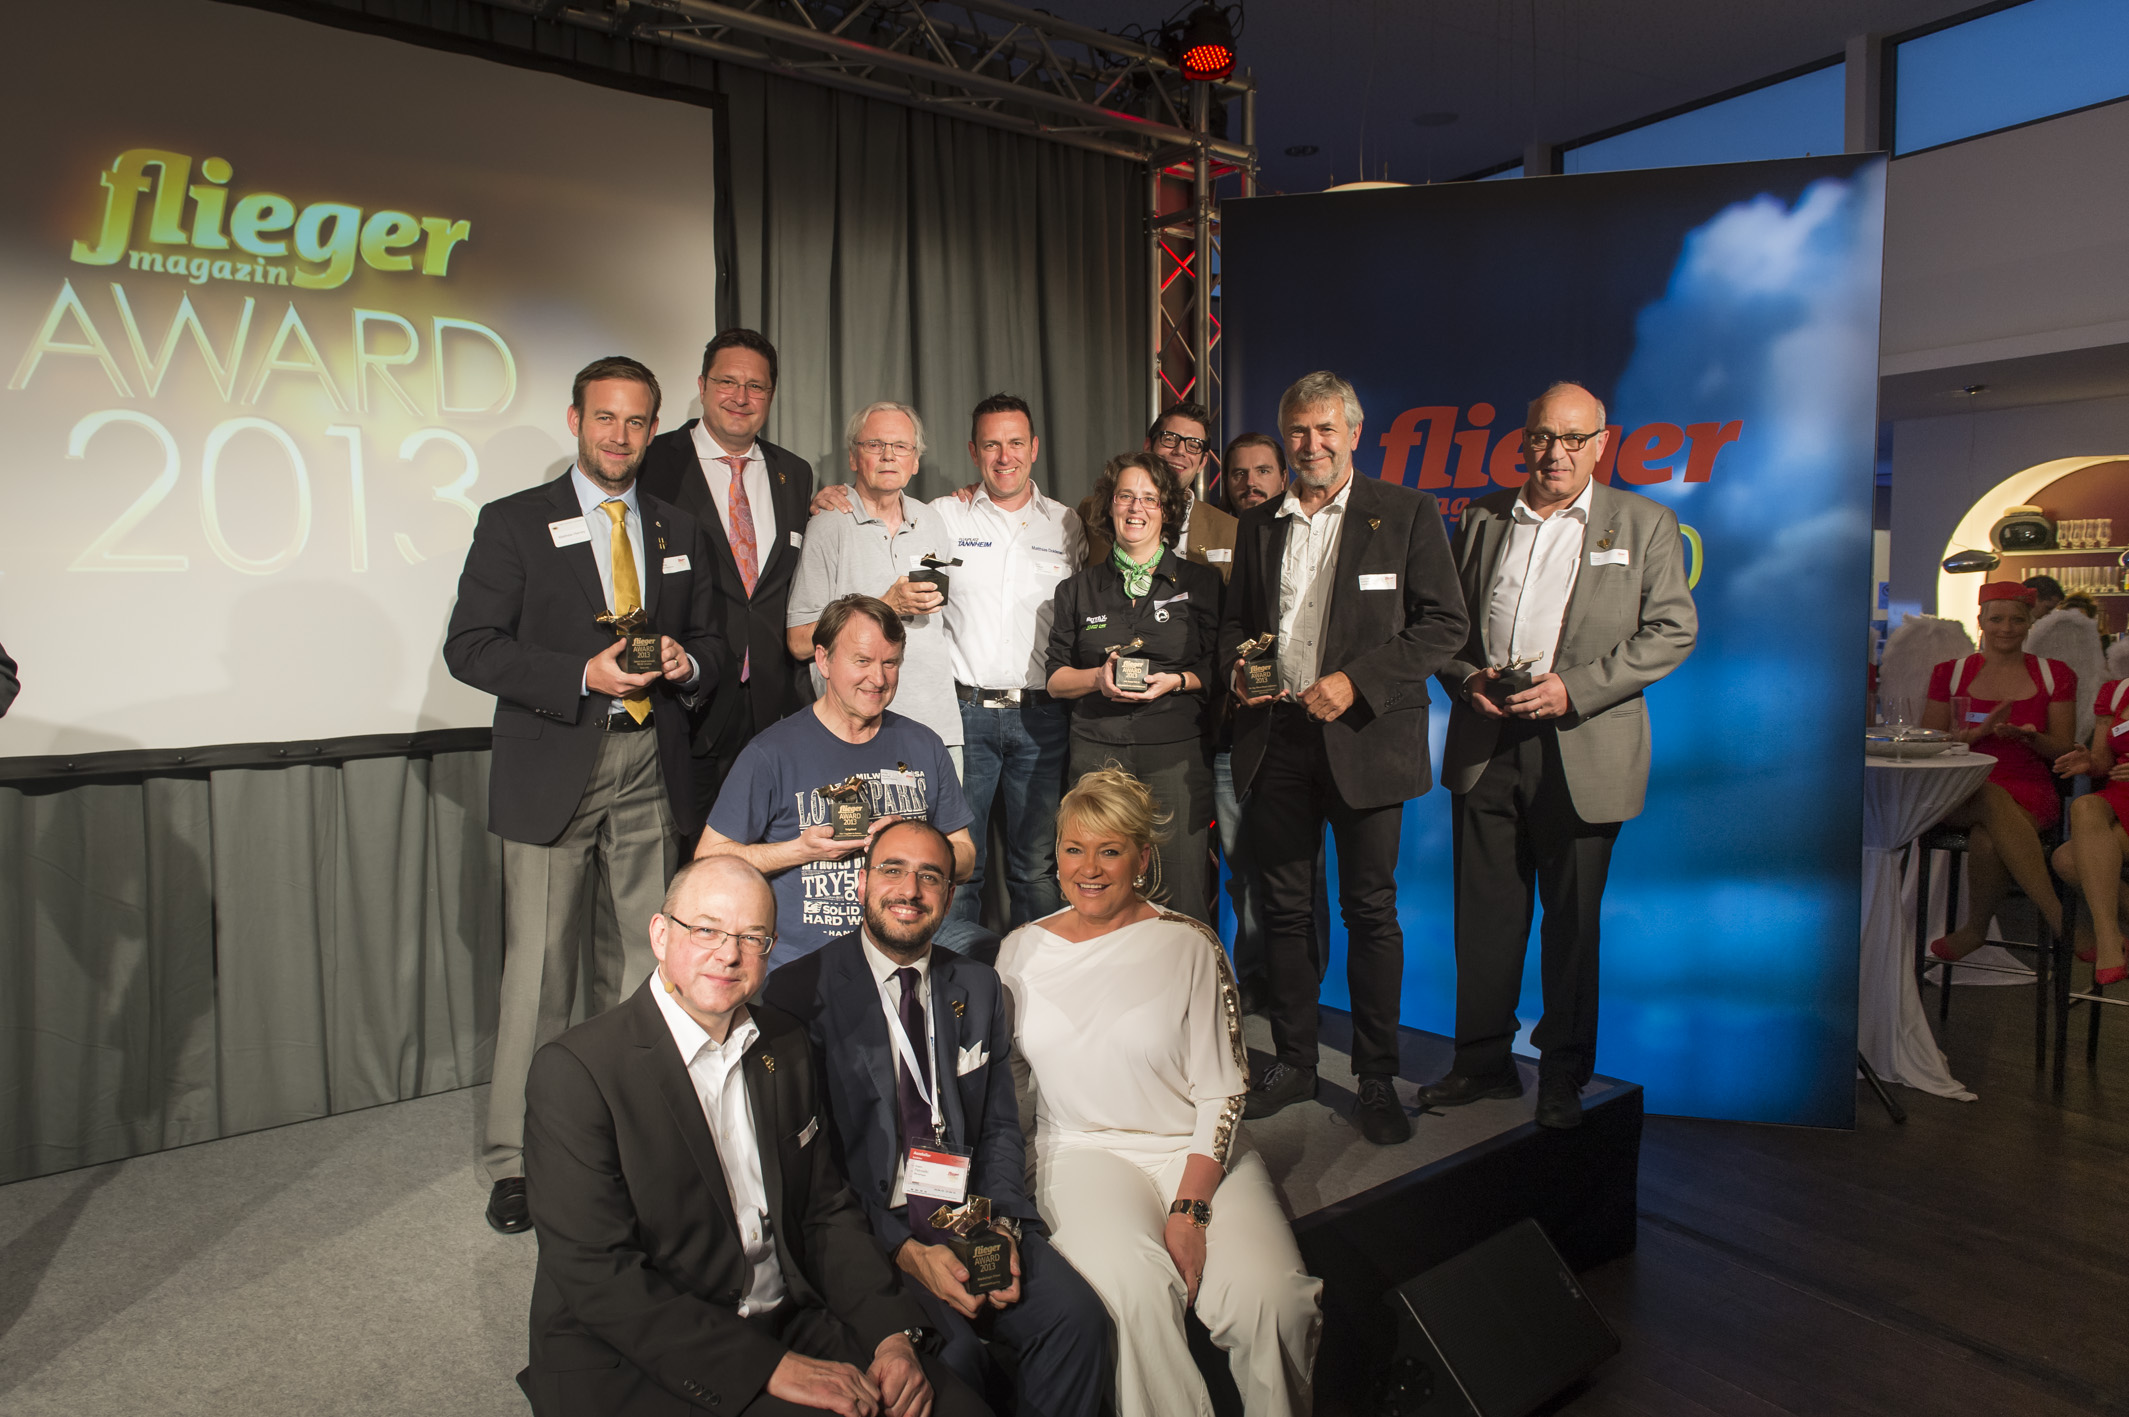 Gruppenfoto der fliegermagazin-Award Gewinner nach der Zeremonie